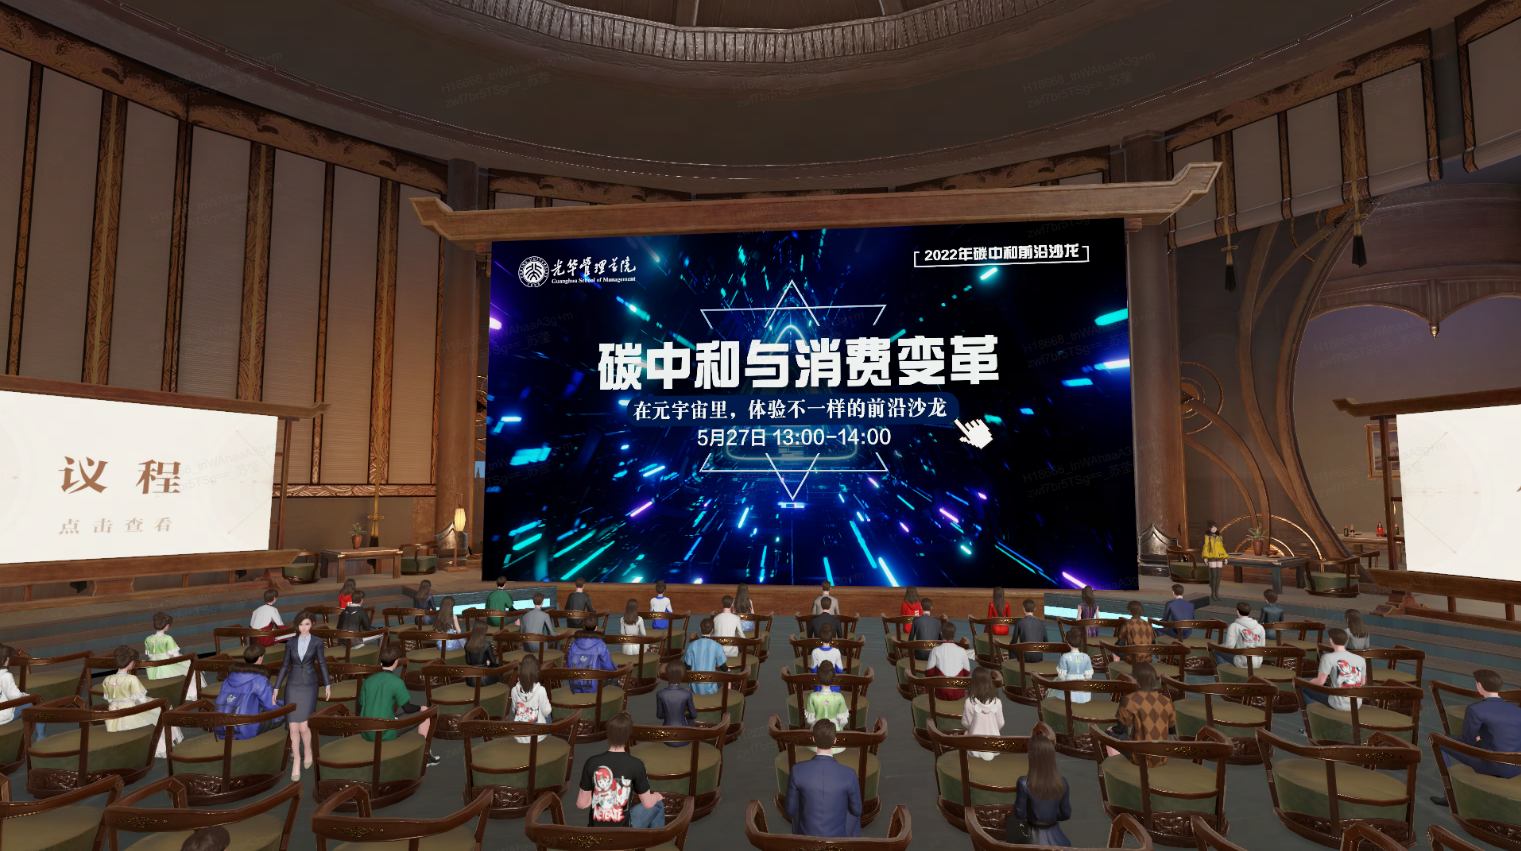 图片展示了一个室内场合，人们坐着观看大屏幕，屏幕上有中文文字和图案，似乎是某种活动或会议的现场。